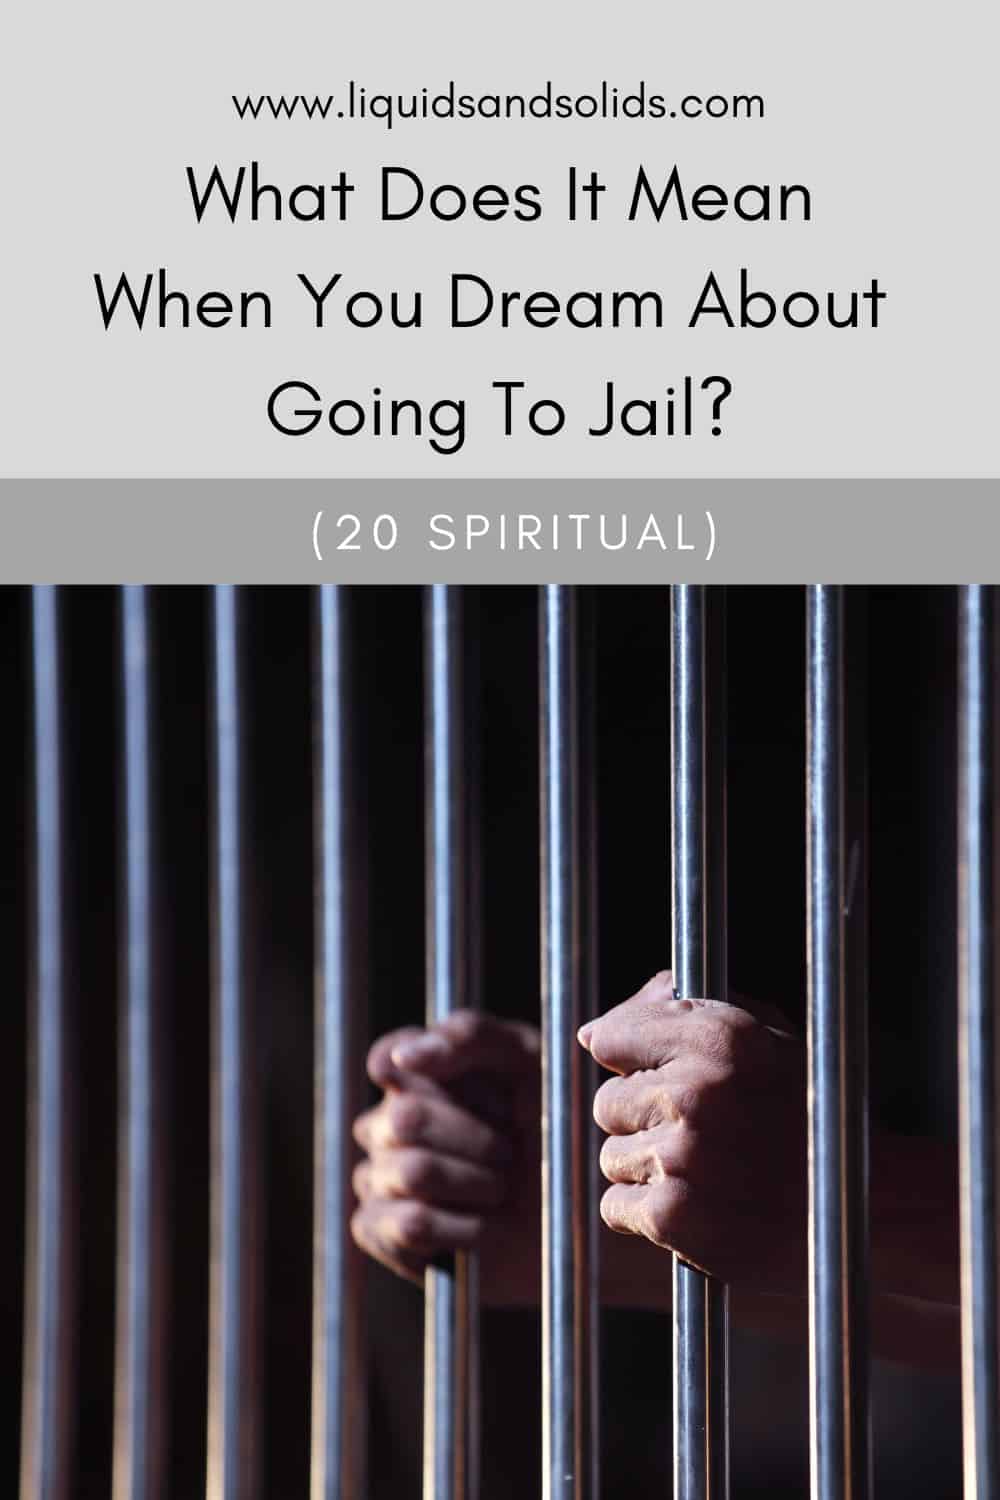  Rêver d'aller en prison (20 significations spirituelles)